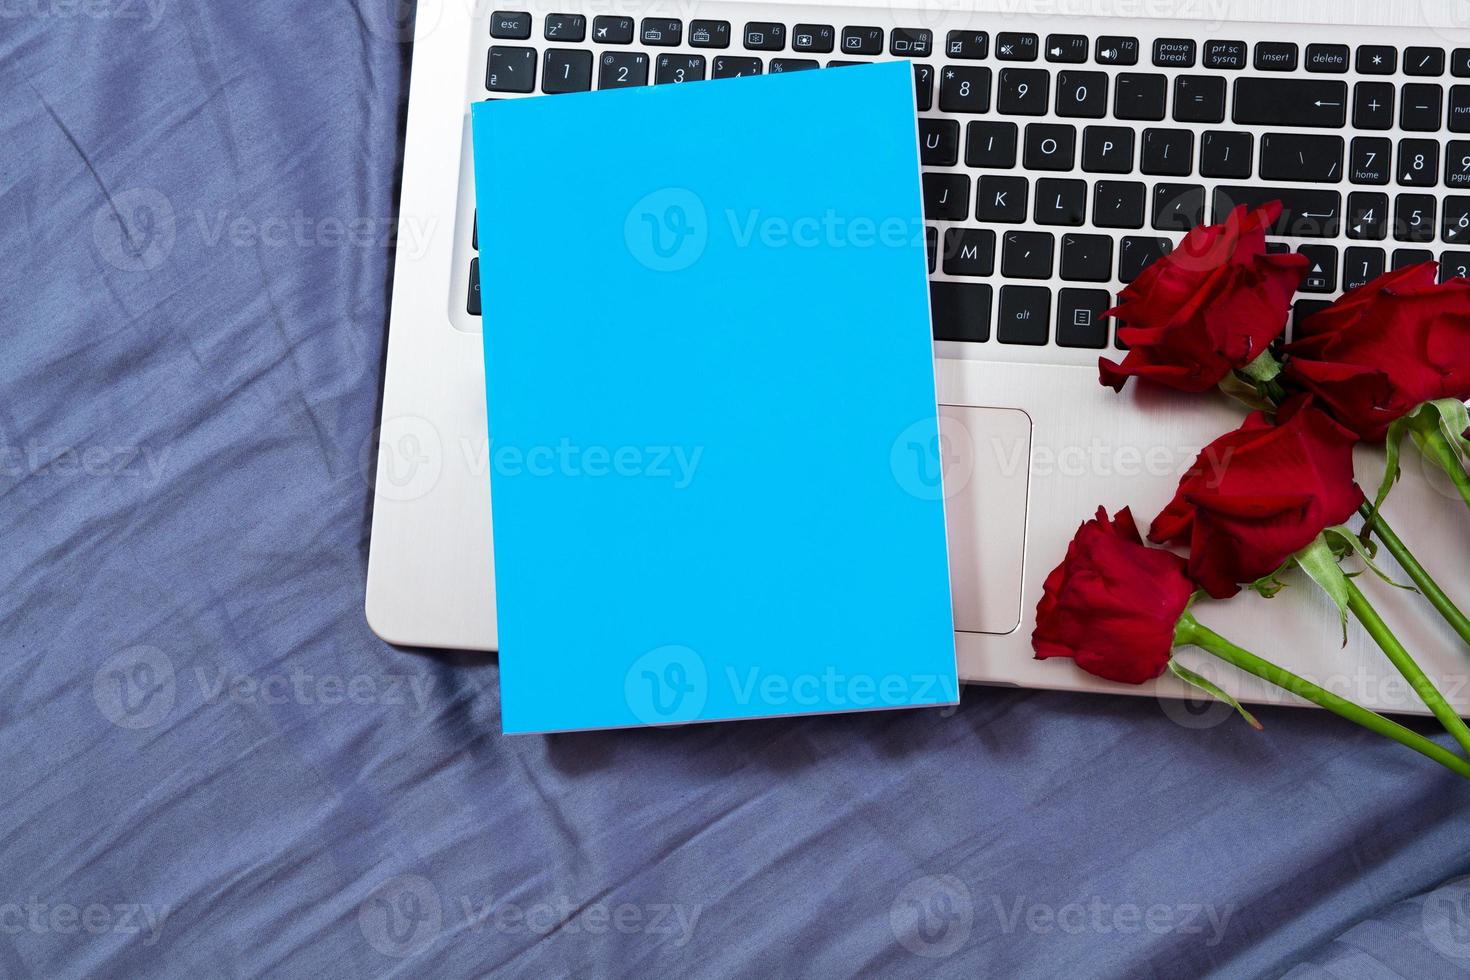 bloco de notas azul simulado no laptop e fundo de flores vermelhas close-up foto